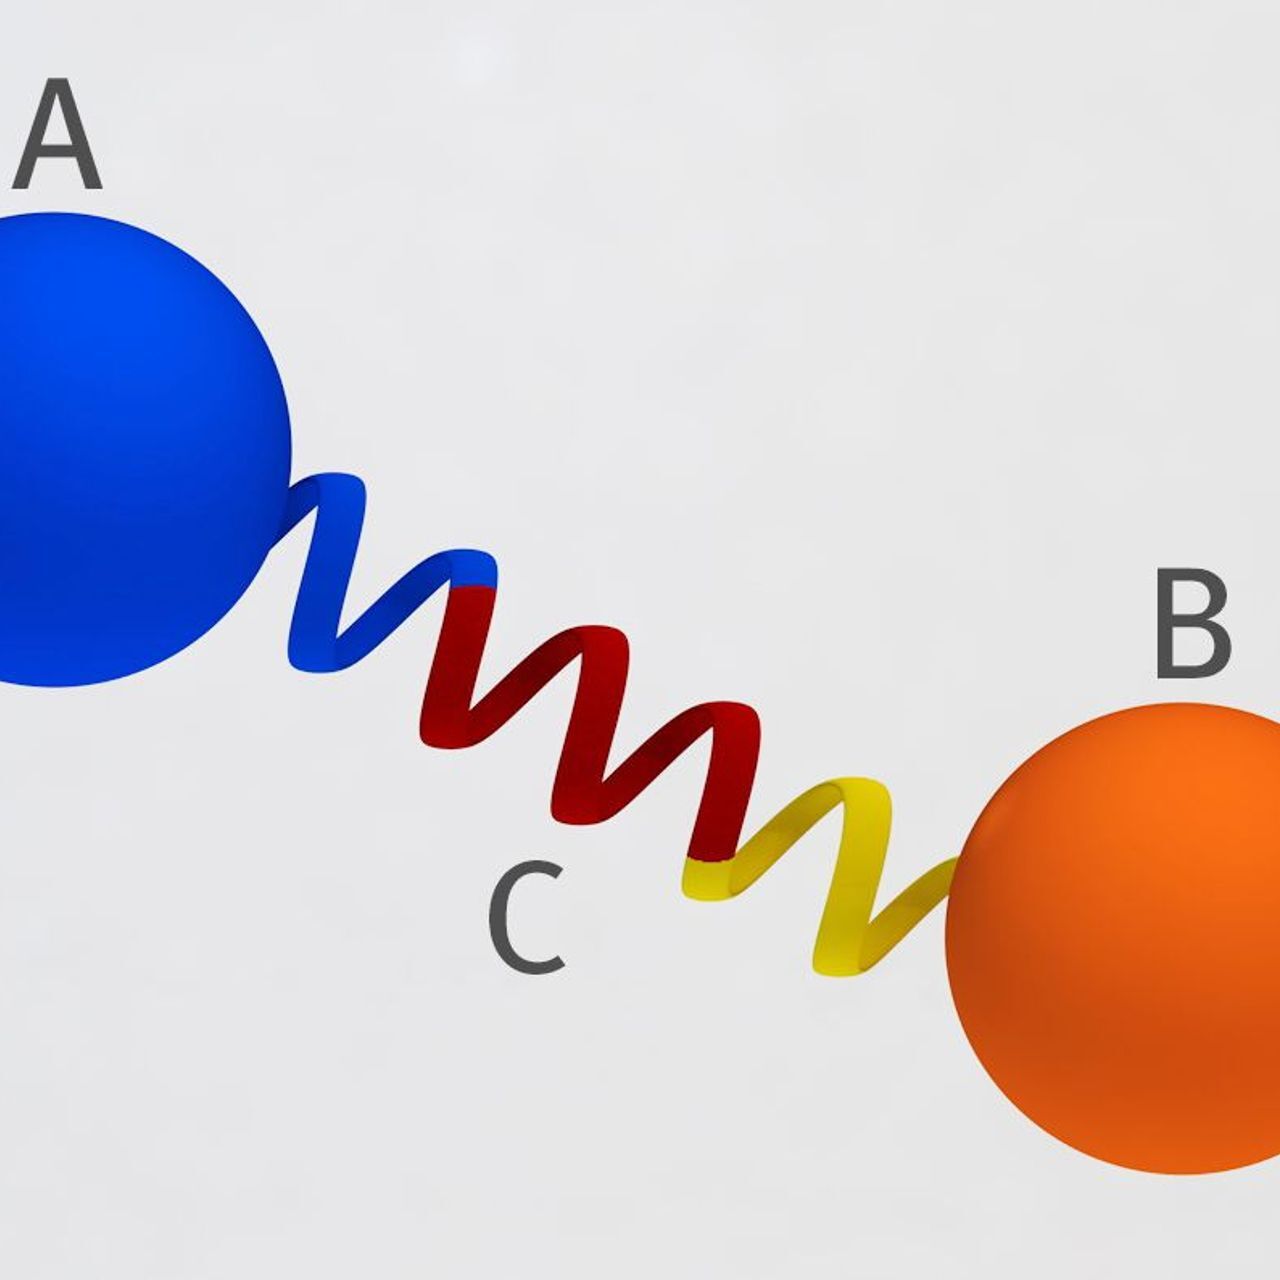 Απόδοση της αρχής της γέφυρας πρωτεΐνης που αναπτύχθηκε στο PSI στην Ελβετία: Δύο πρωτεΐνες (Α και Β) συνδέονται μεταξύ τους σε σταθερή απόσταση και γωνία μέσω μιας άκαμπτης πρωτεϊνικής σπείρας έτσι ώστε να μην μπορούν να πλησιάσουν η μία την άλλη και να μην μπορούν να αλληλεπιδράσουν (Γράφημα: Mahir Dzambegovic/Paul Scherrer Institute)